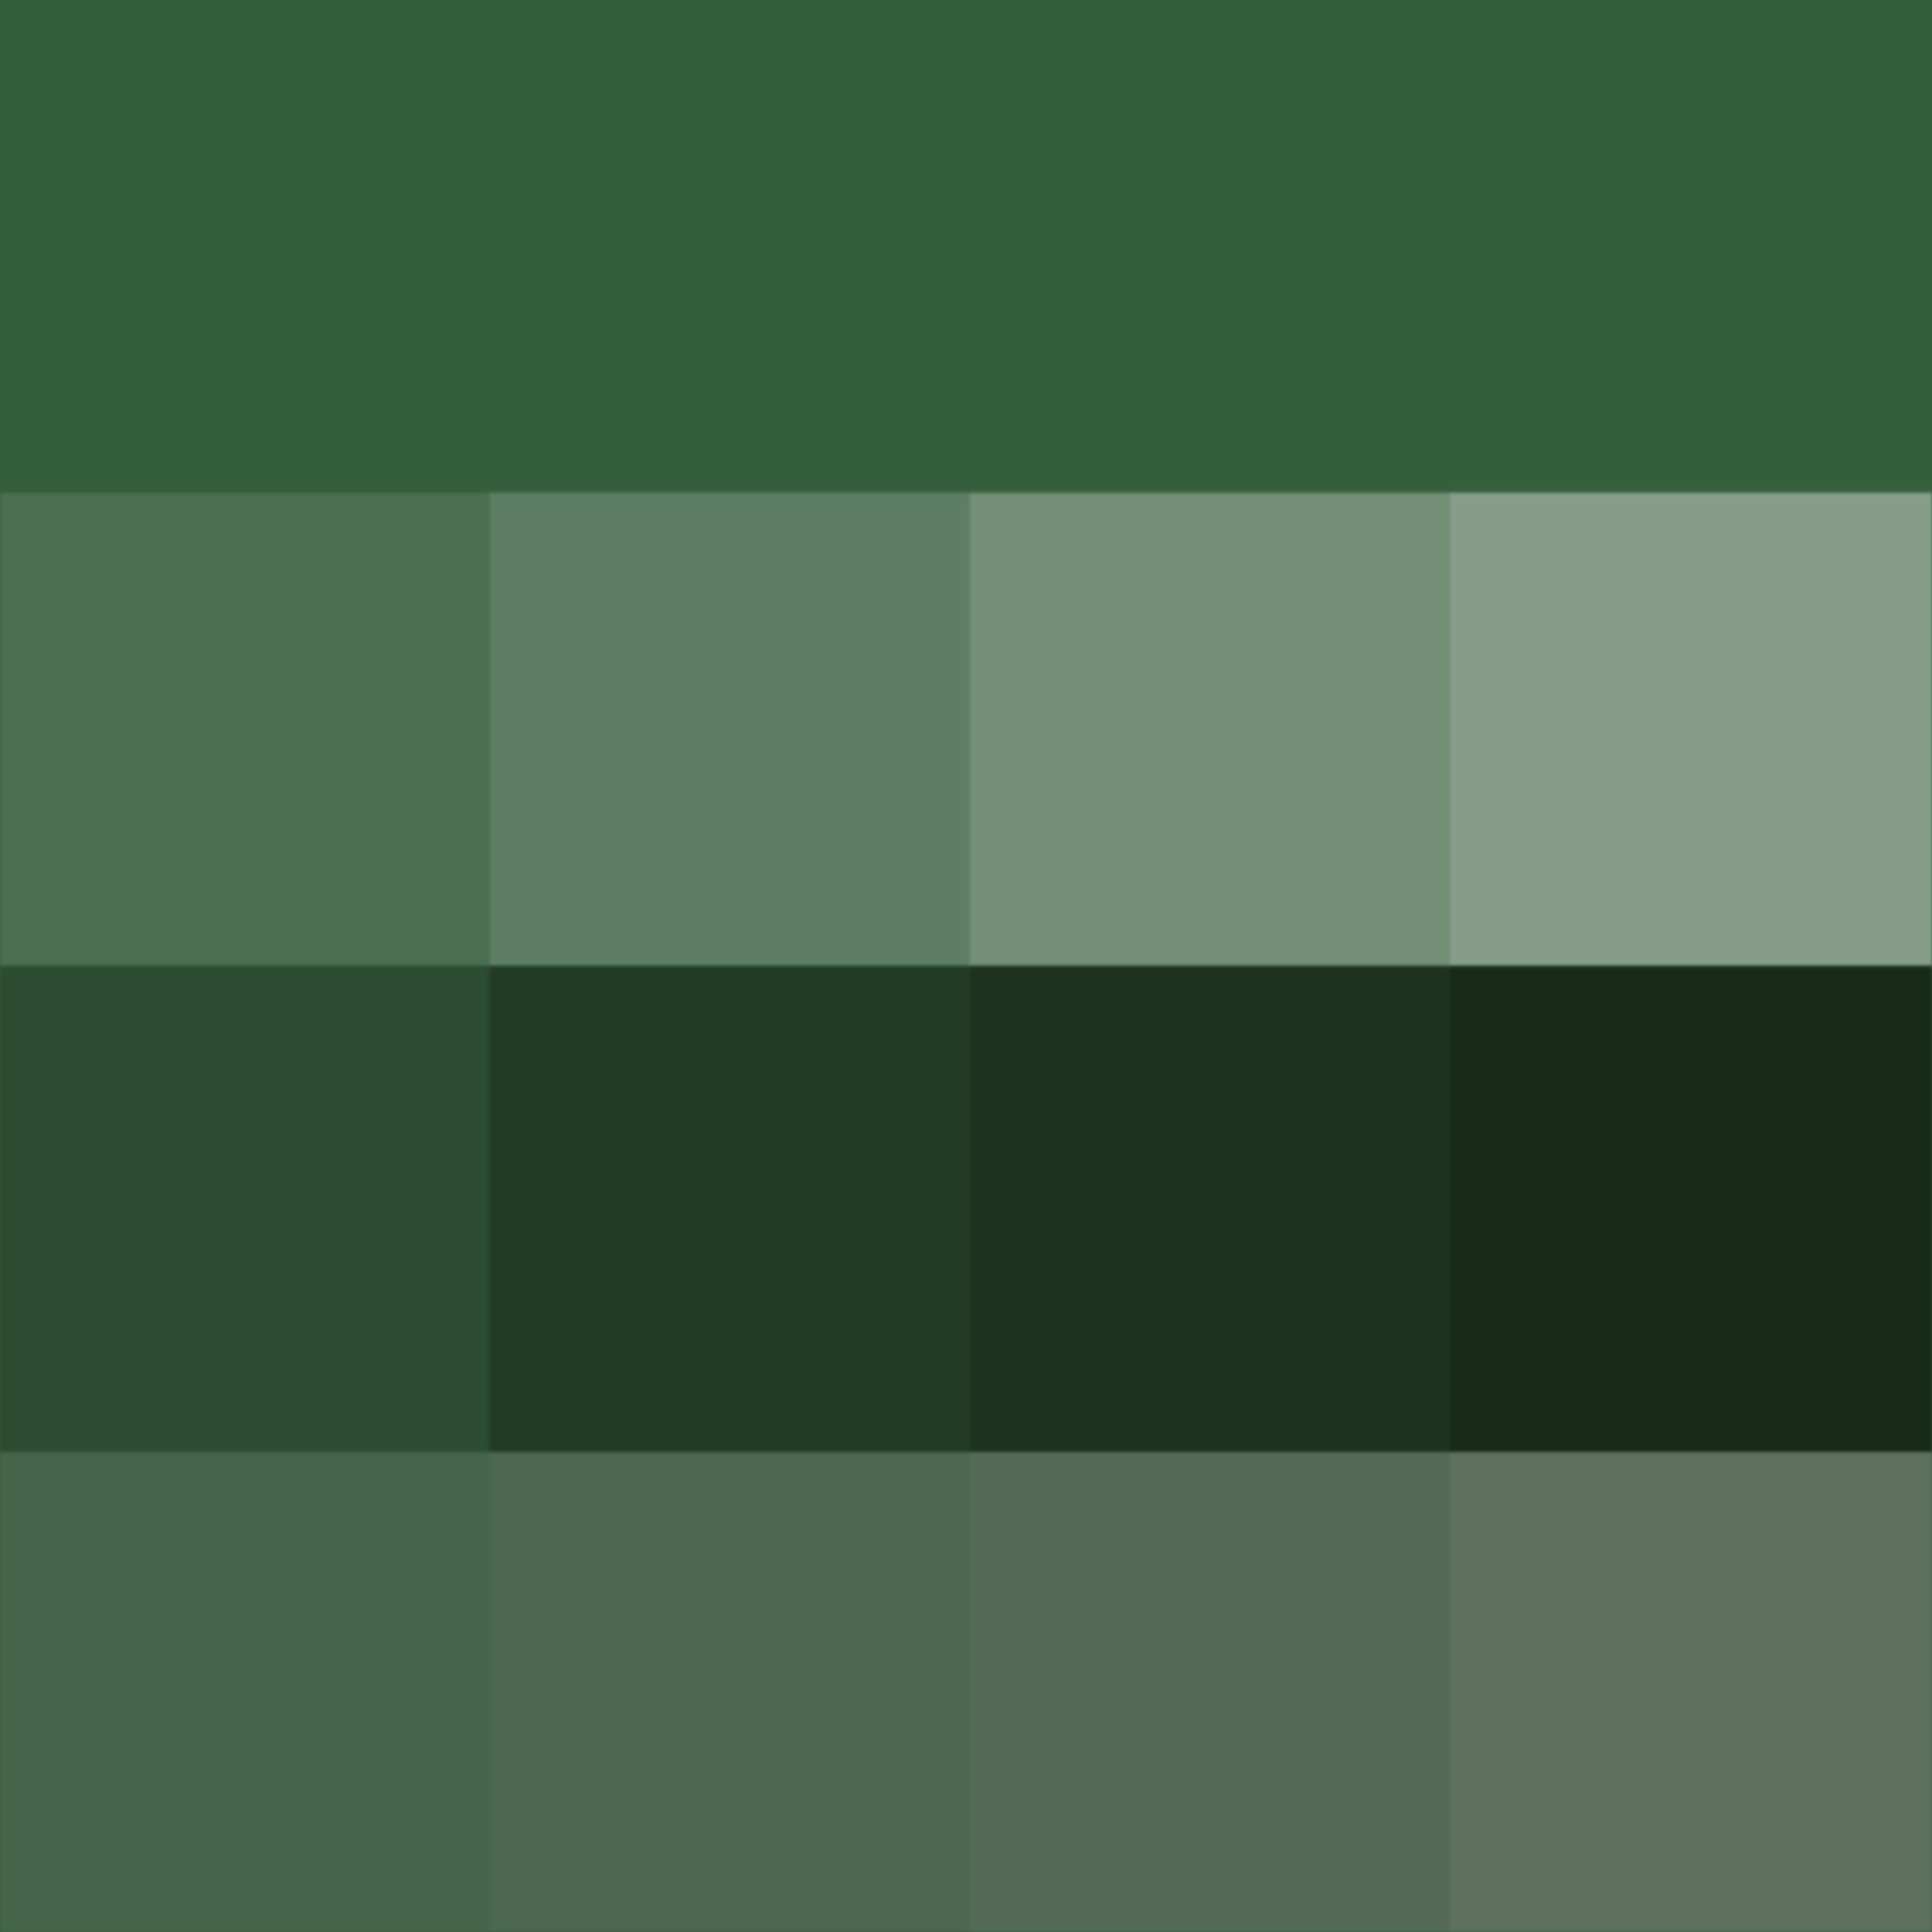 Или зеленый например цвета зеленых. Цвет Хантер Грин. Хаки пантон. Хаки болотный оливковый пантон. Hunter Green палитра.